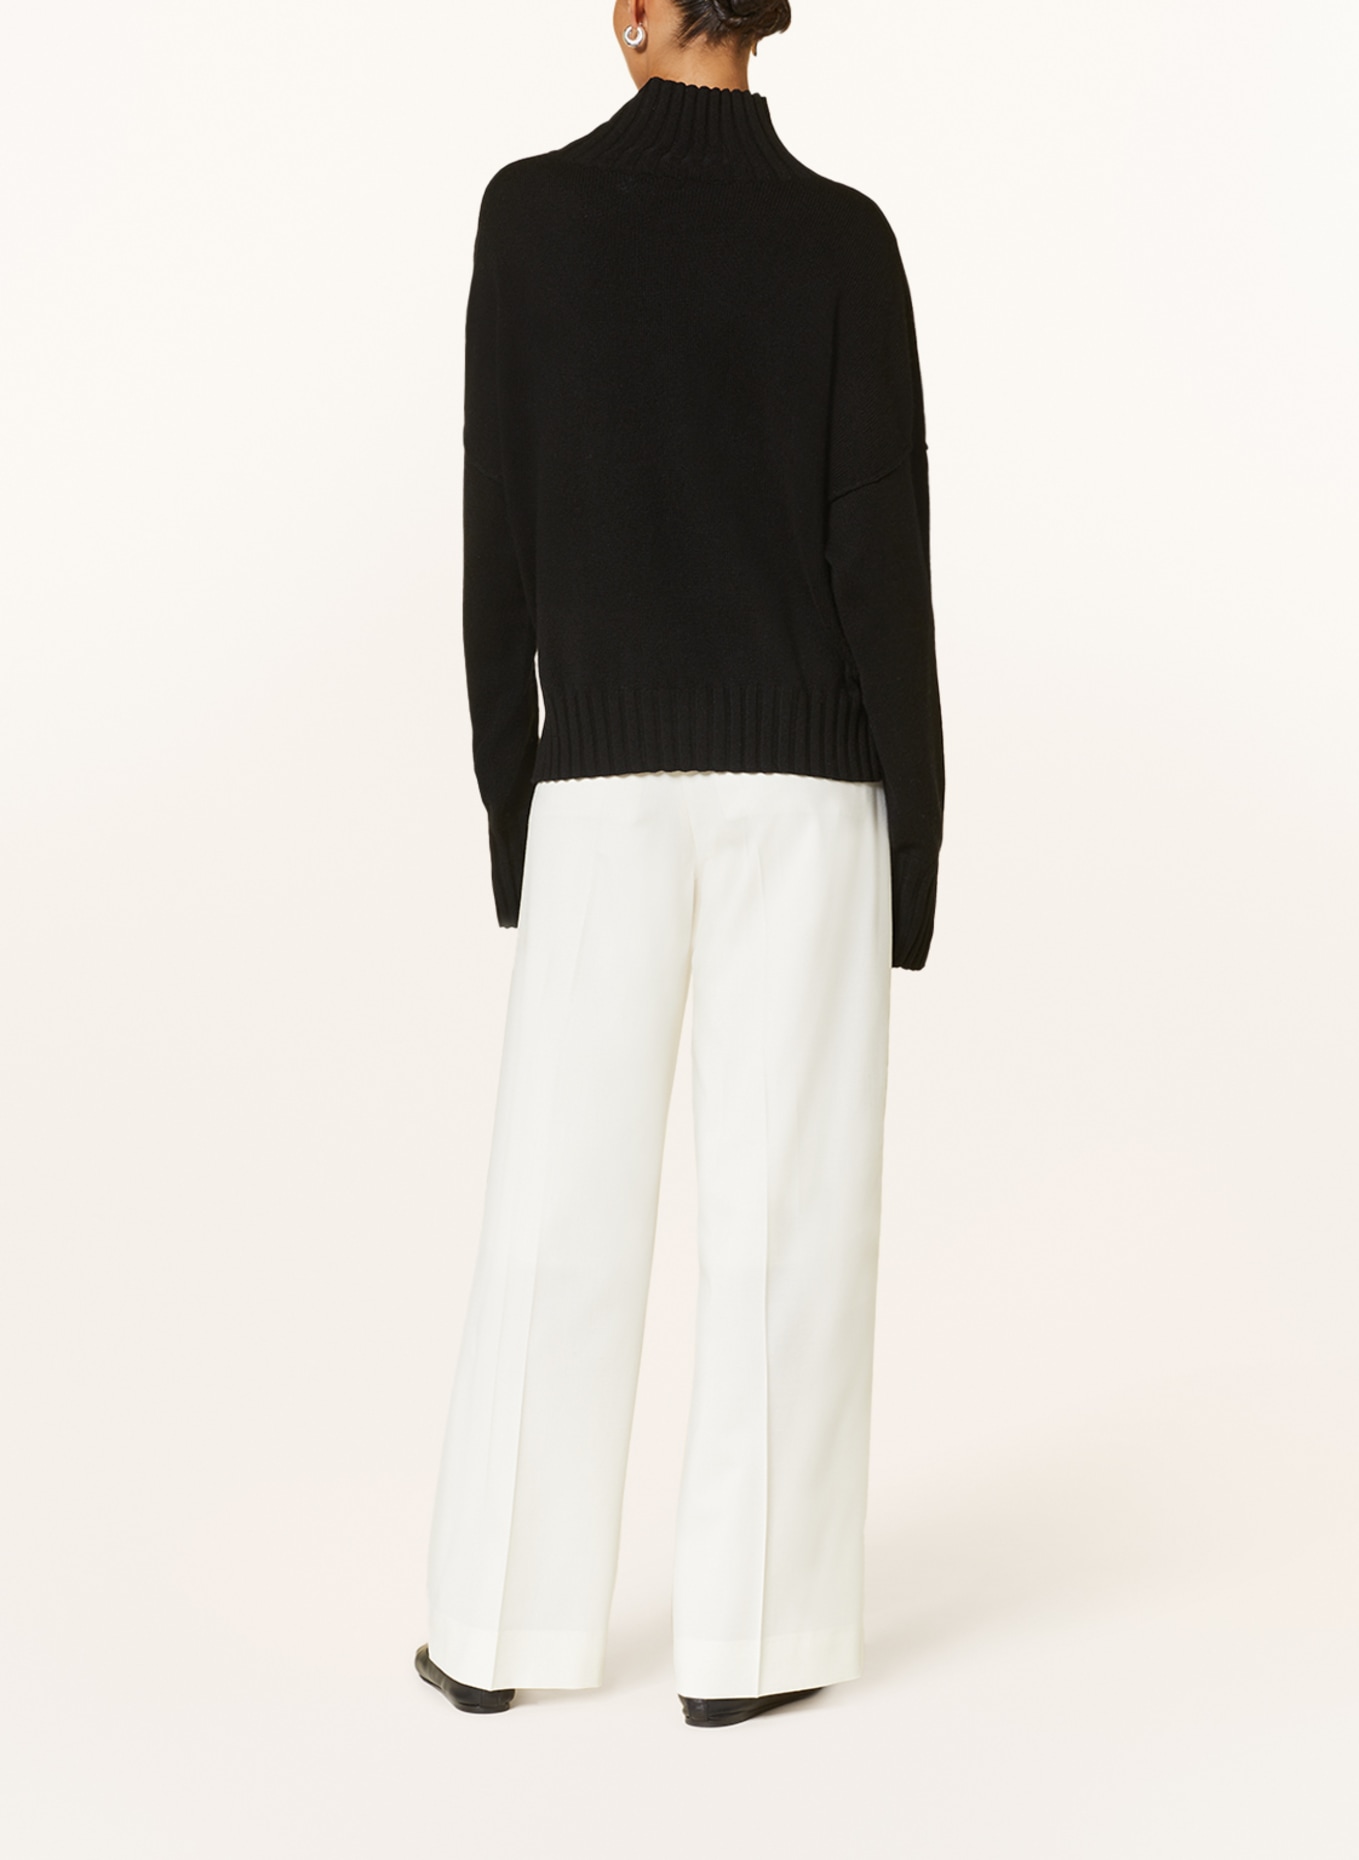 MRS & HUGS Pullover mit Cashmere, Farbe: SCHWARZ (Bild 3)